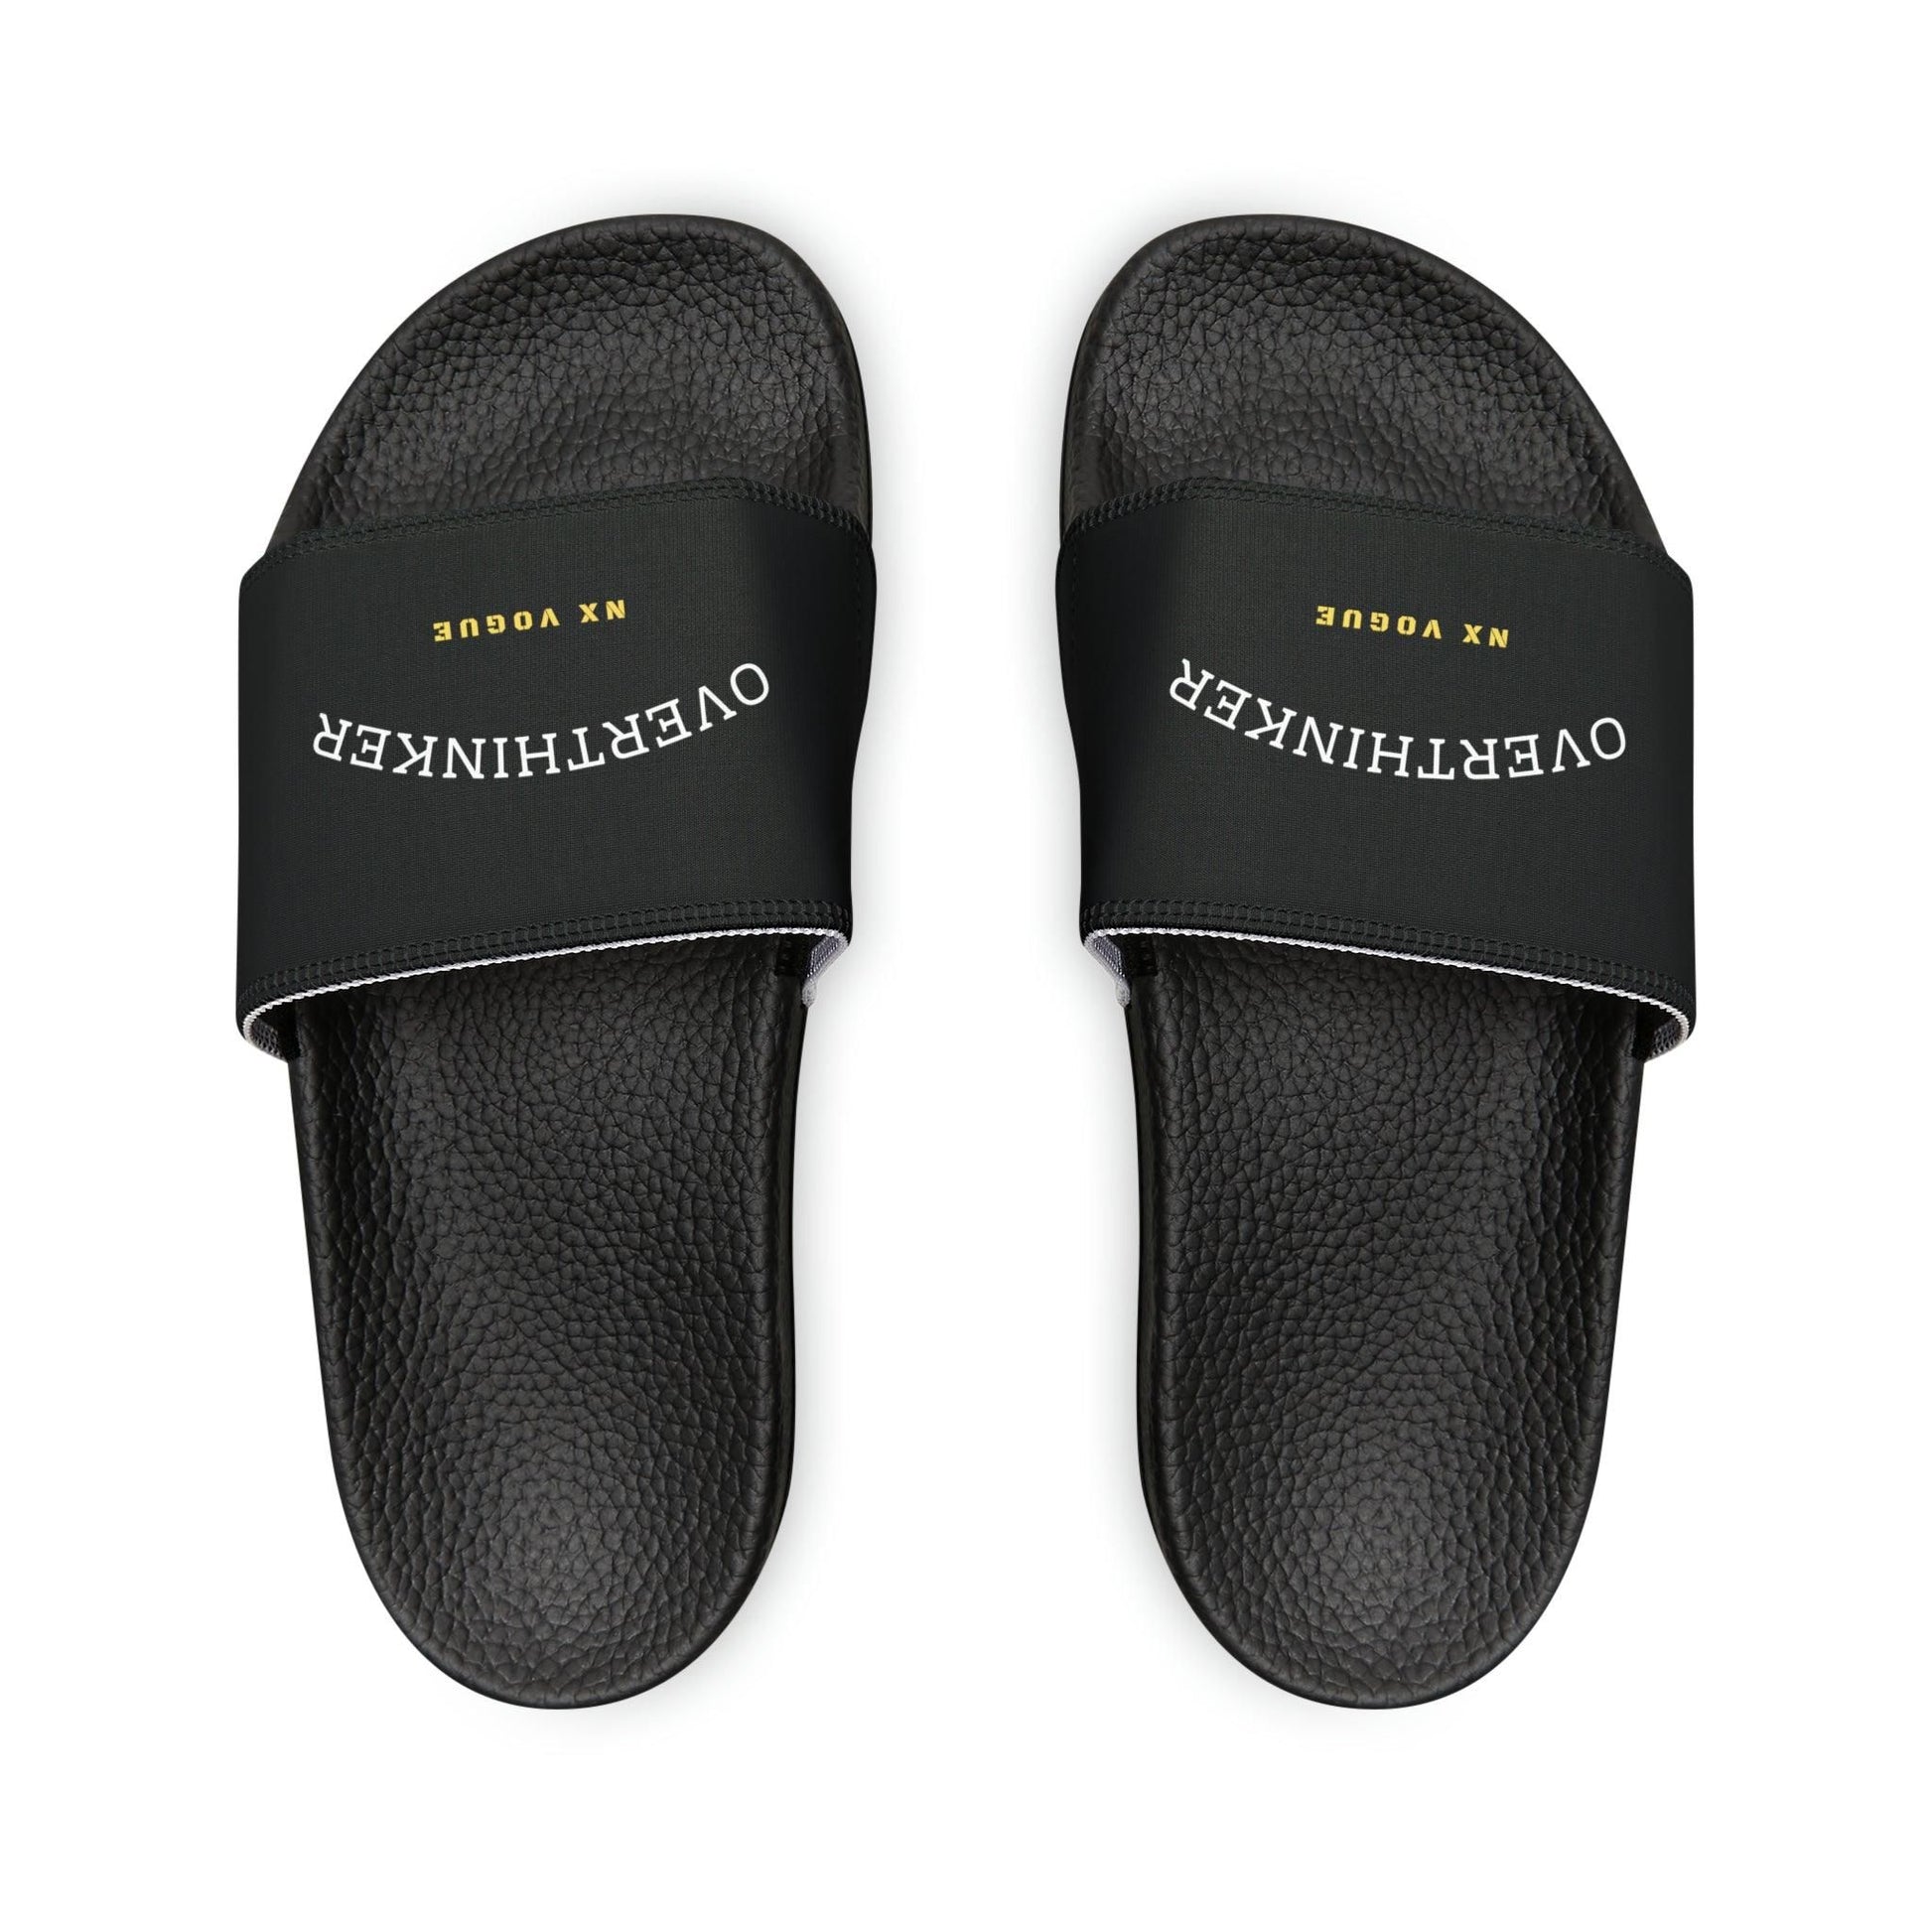 Overthinker Slide Slipper Men's PU Slide Sandals Shoes Black US 6 